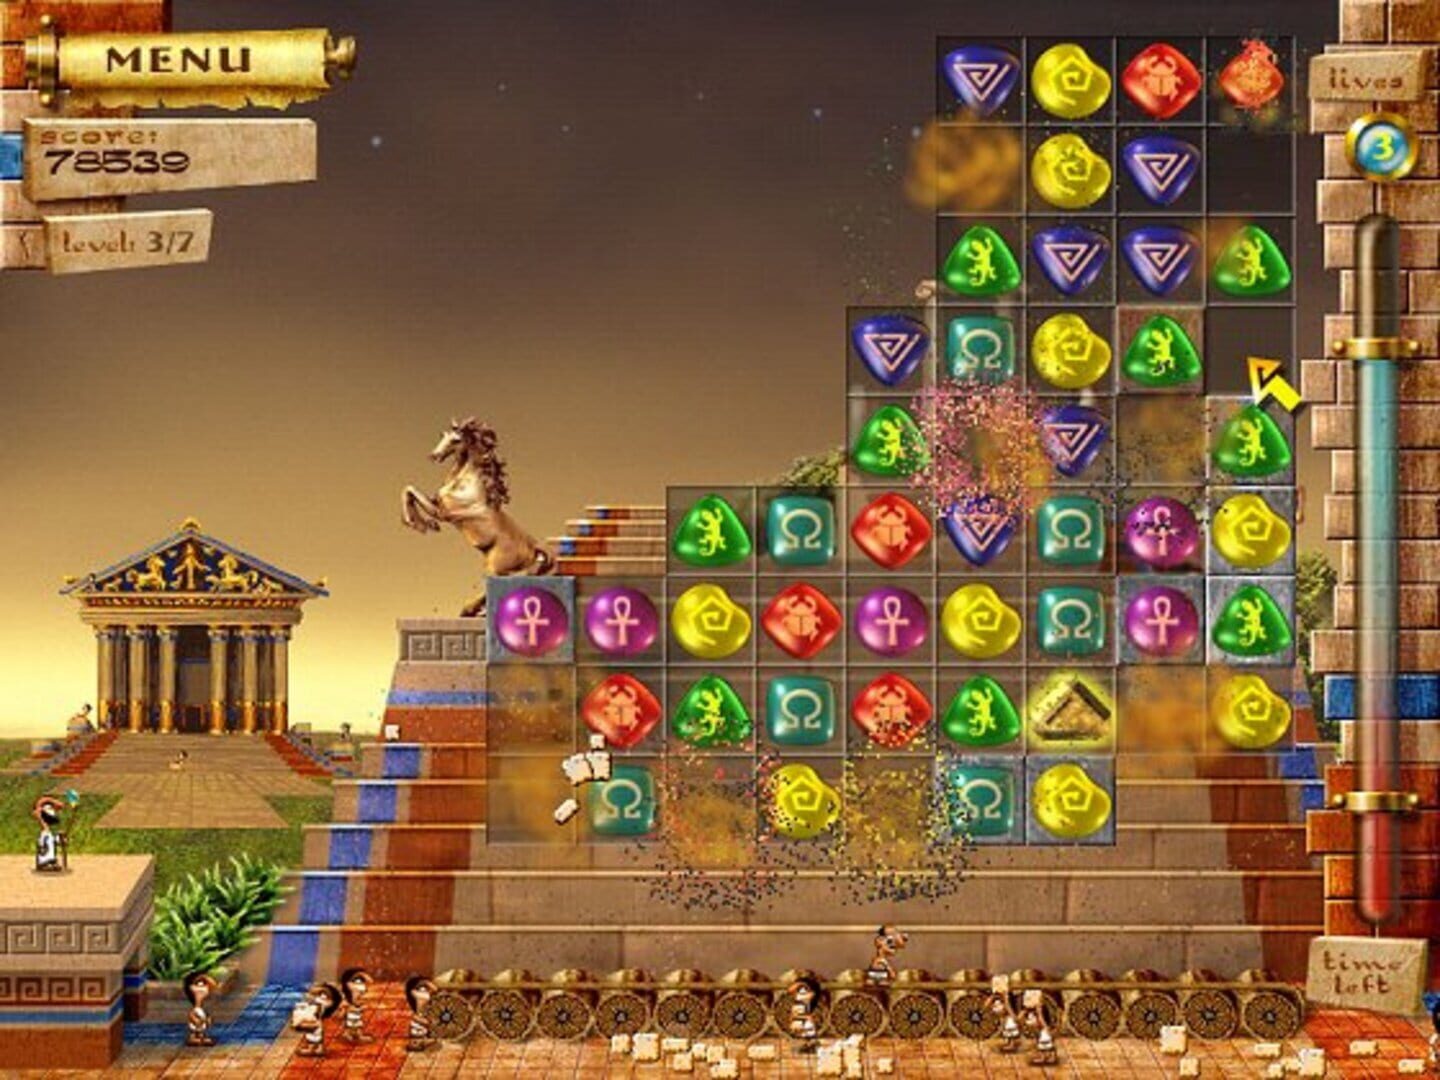 Игра в пирамиду похожие. 7 Wonders игра. Семь чудес света игра. Игра 7 чудес света Египет. Игра 7 Wonders пирамиды.